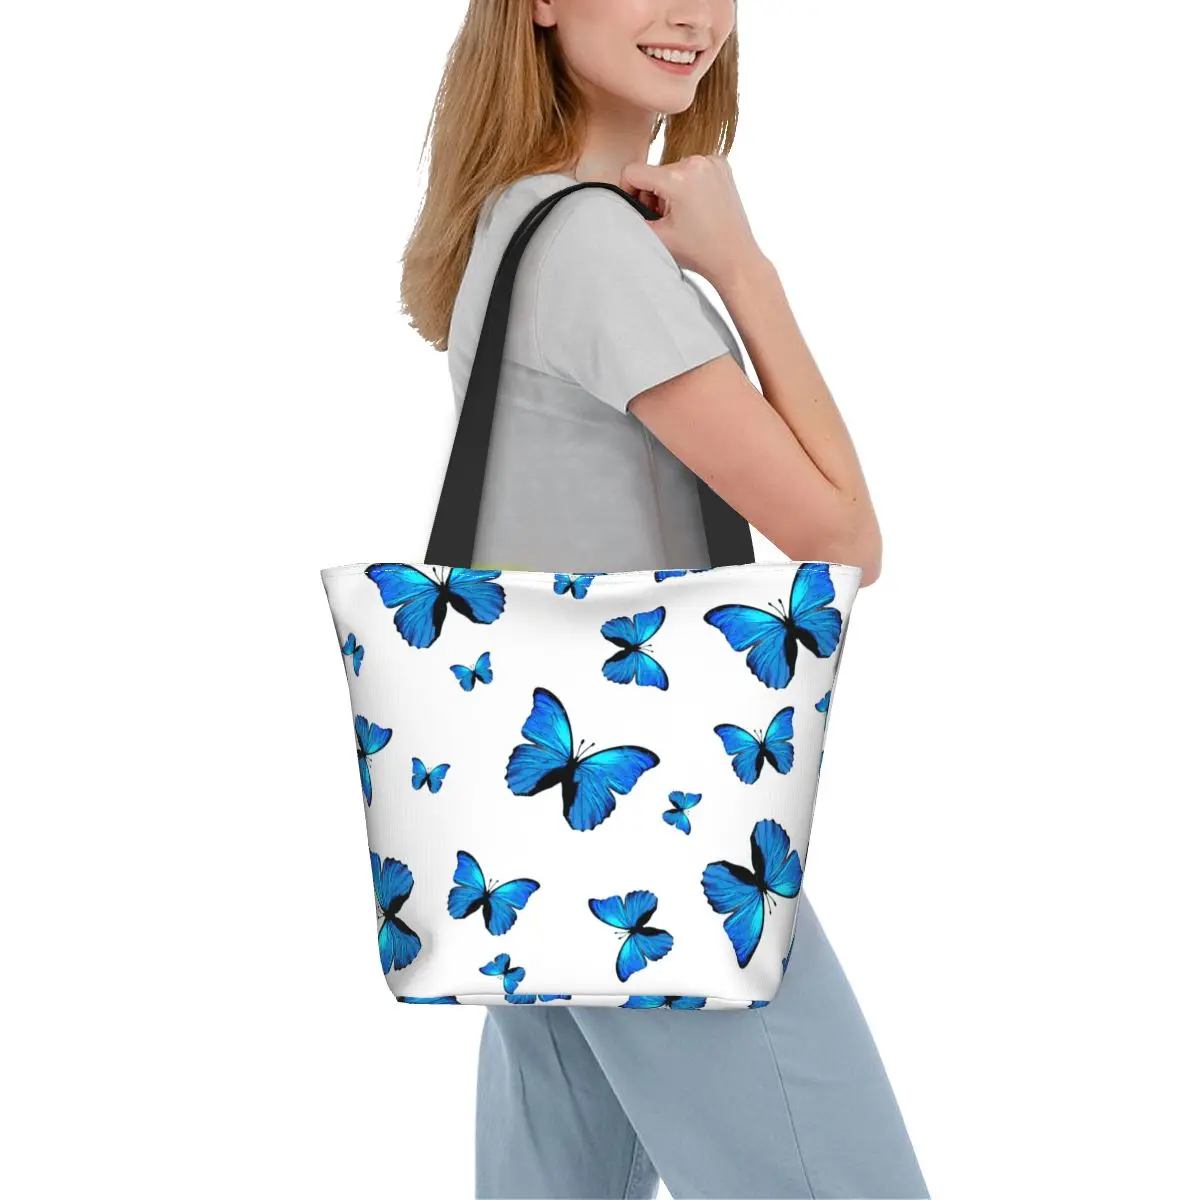 

Сумка-шоппер с голубыми бабочками и принтом насекомых, стильная новинка, Домашняя мода, сумки-шопперы с принтом, эстетические дорожные сумки для покупок